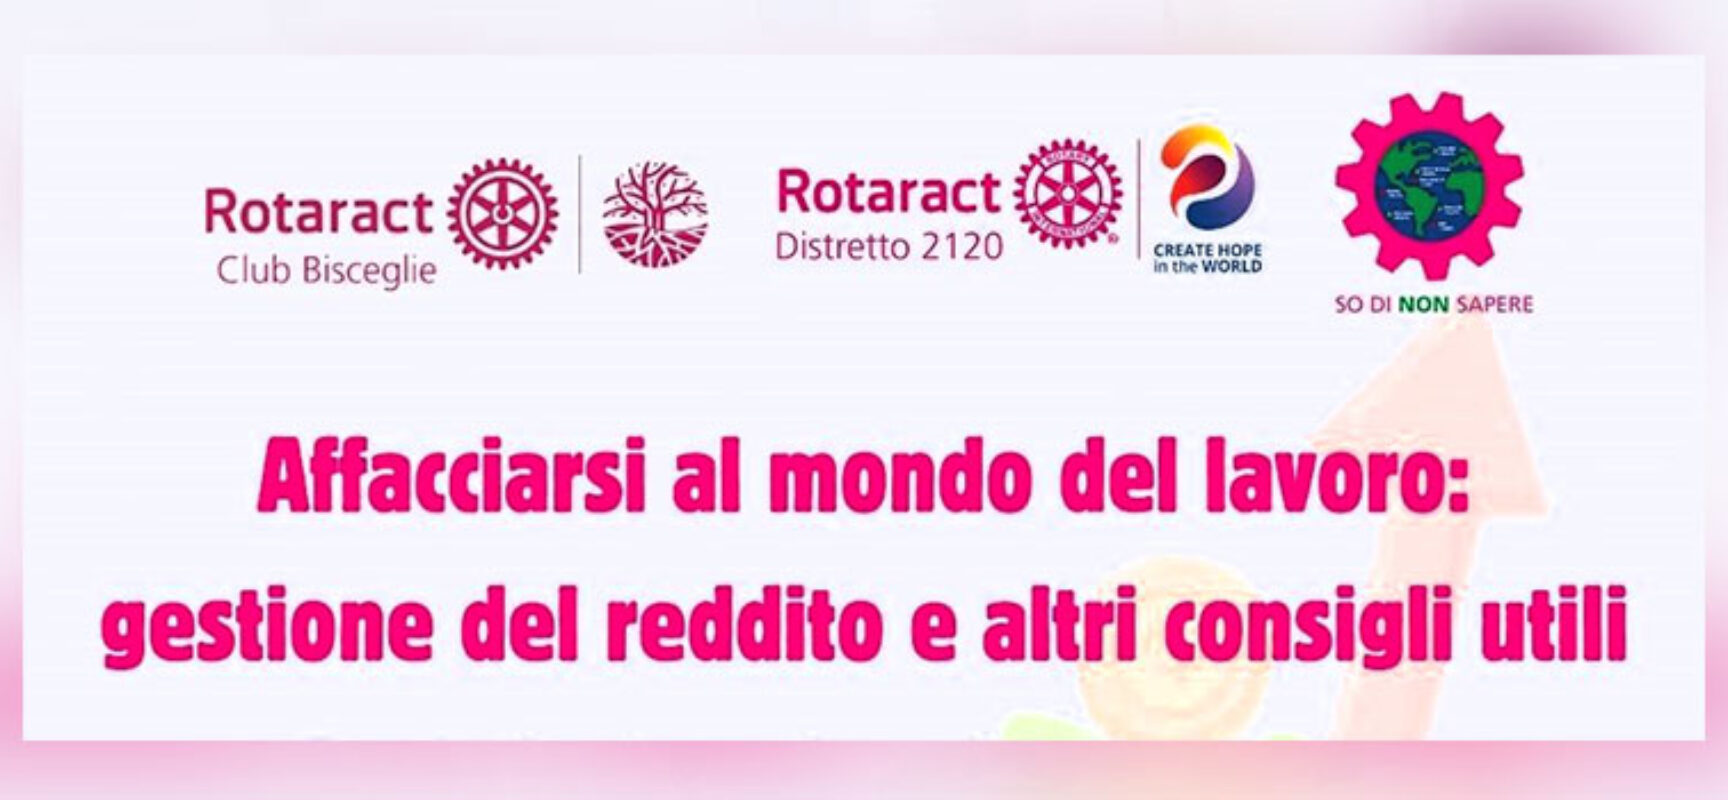 Rotaract Bisceglie organizza serata formativa per muovere i primi passi nel mondo del lavoro